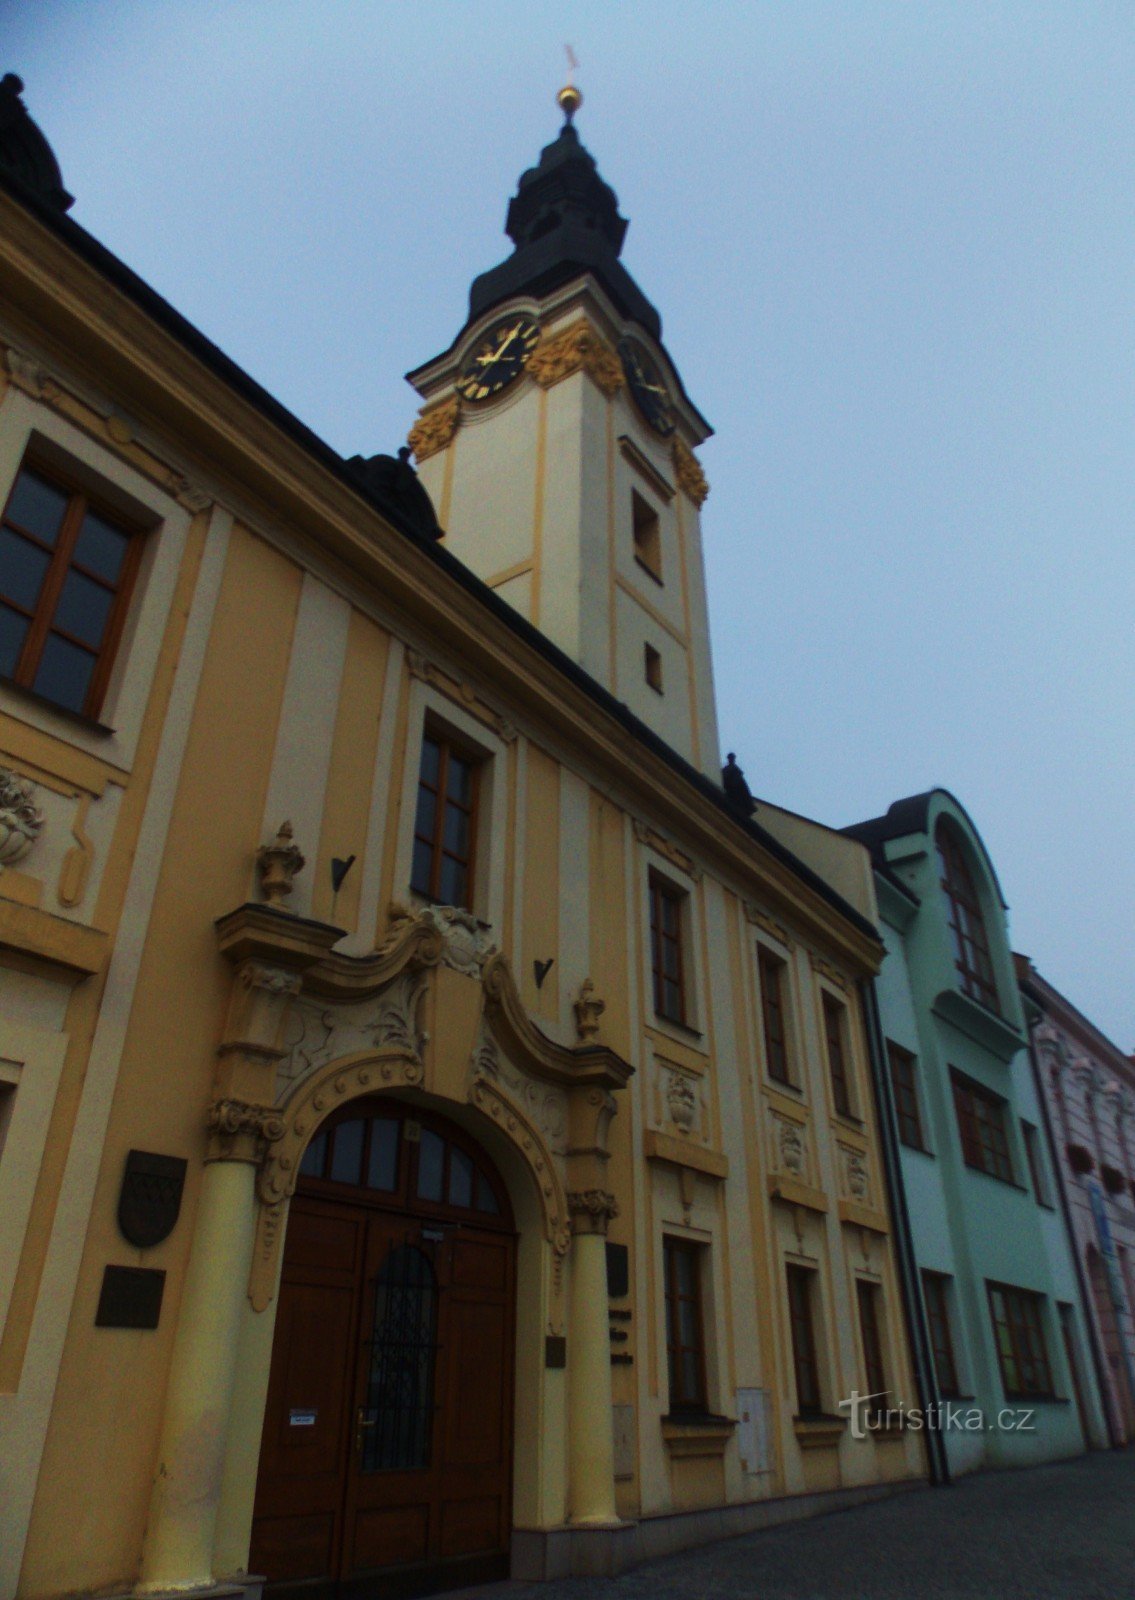 Hôtel de ville de Kojetín